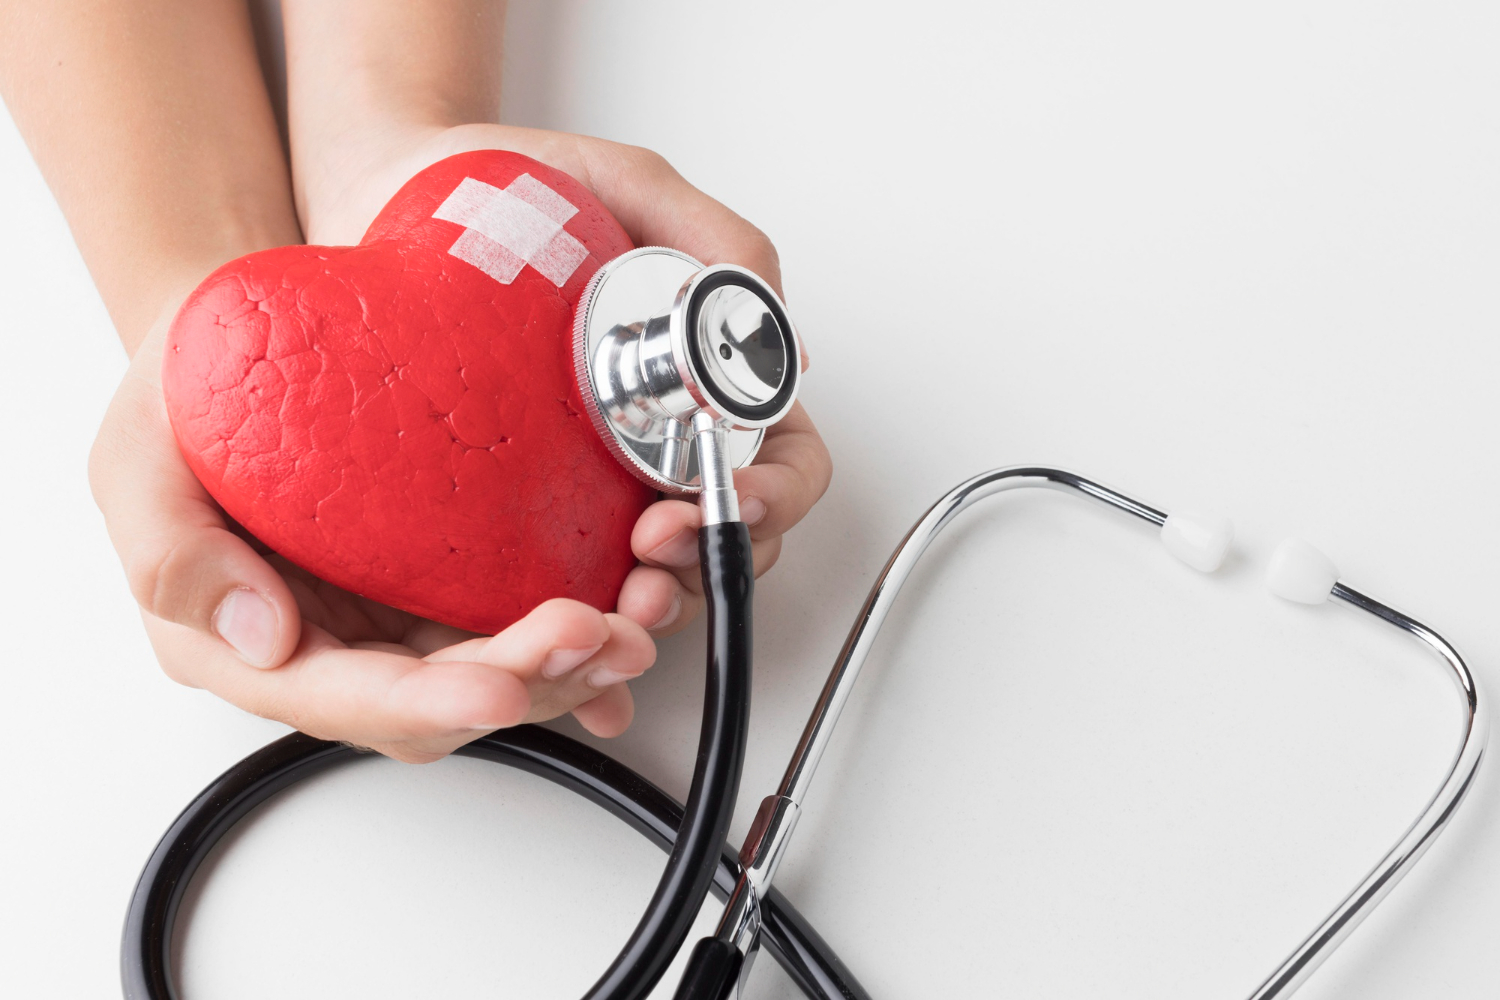 heart health and cardiovascular disease